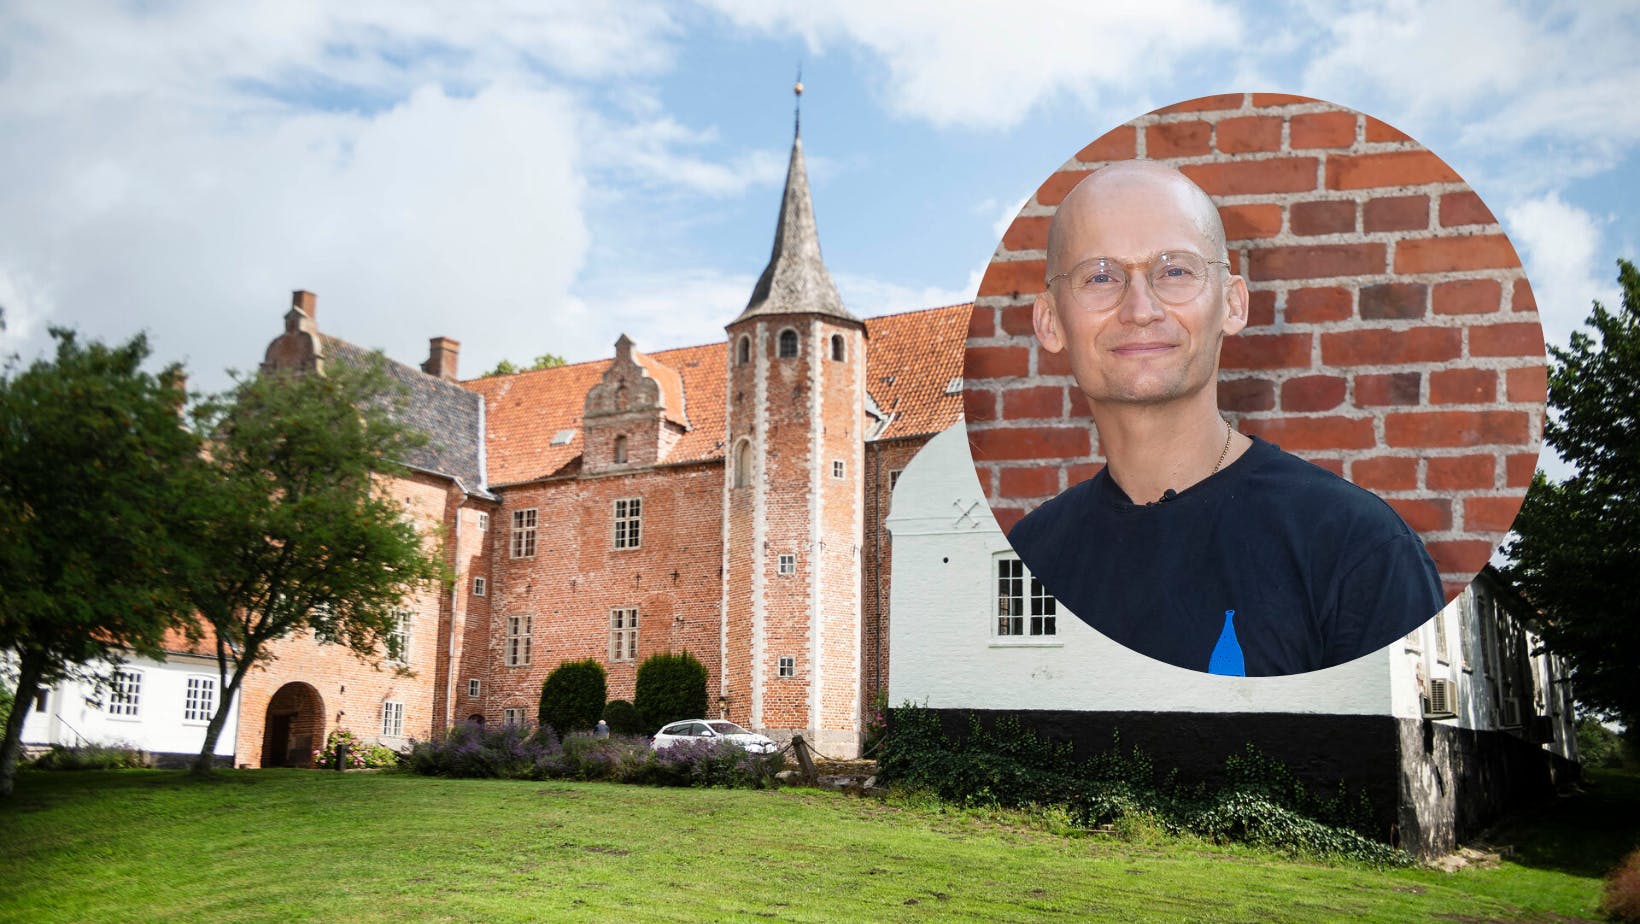 Det er nu bekræftet, at den næste ejer af det fynske slot Harridslevgaard bliver Christian Stadil.&nbsp;